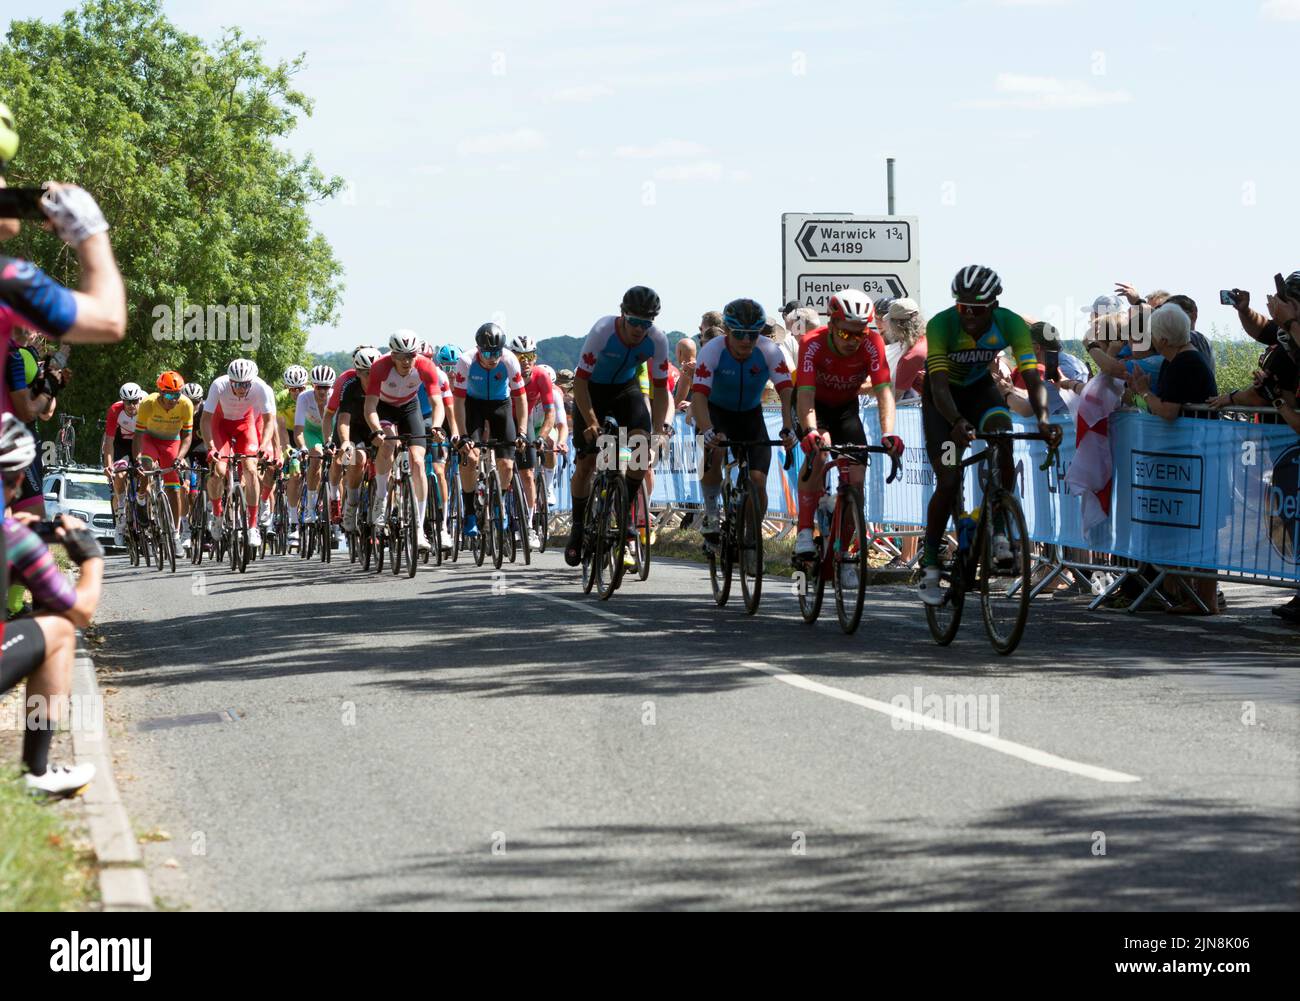 La carrera ciclista masculina de los Juegos de la Commonwealth de 2022, que se aproxima a Hampton-on-the-Hill Village, Warwickshire, Reino Unido Foto de stock